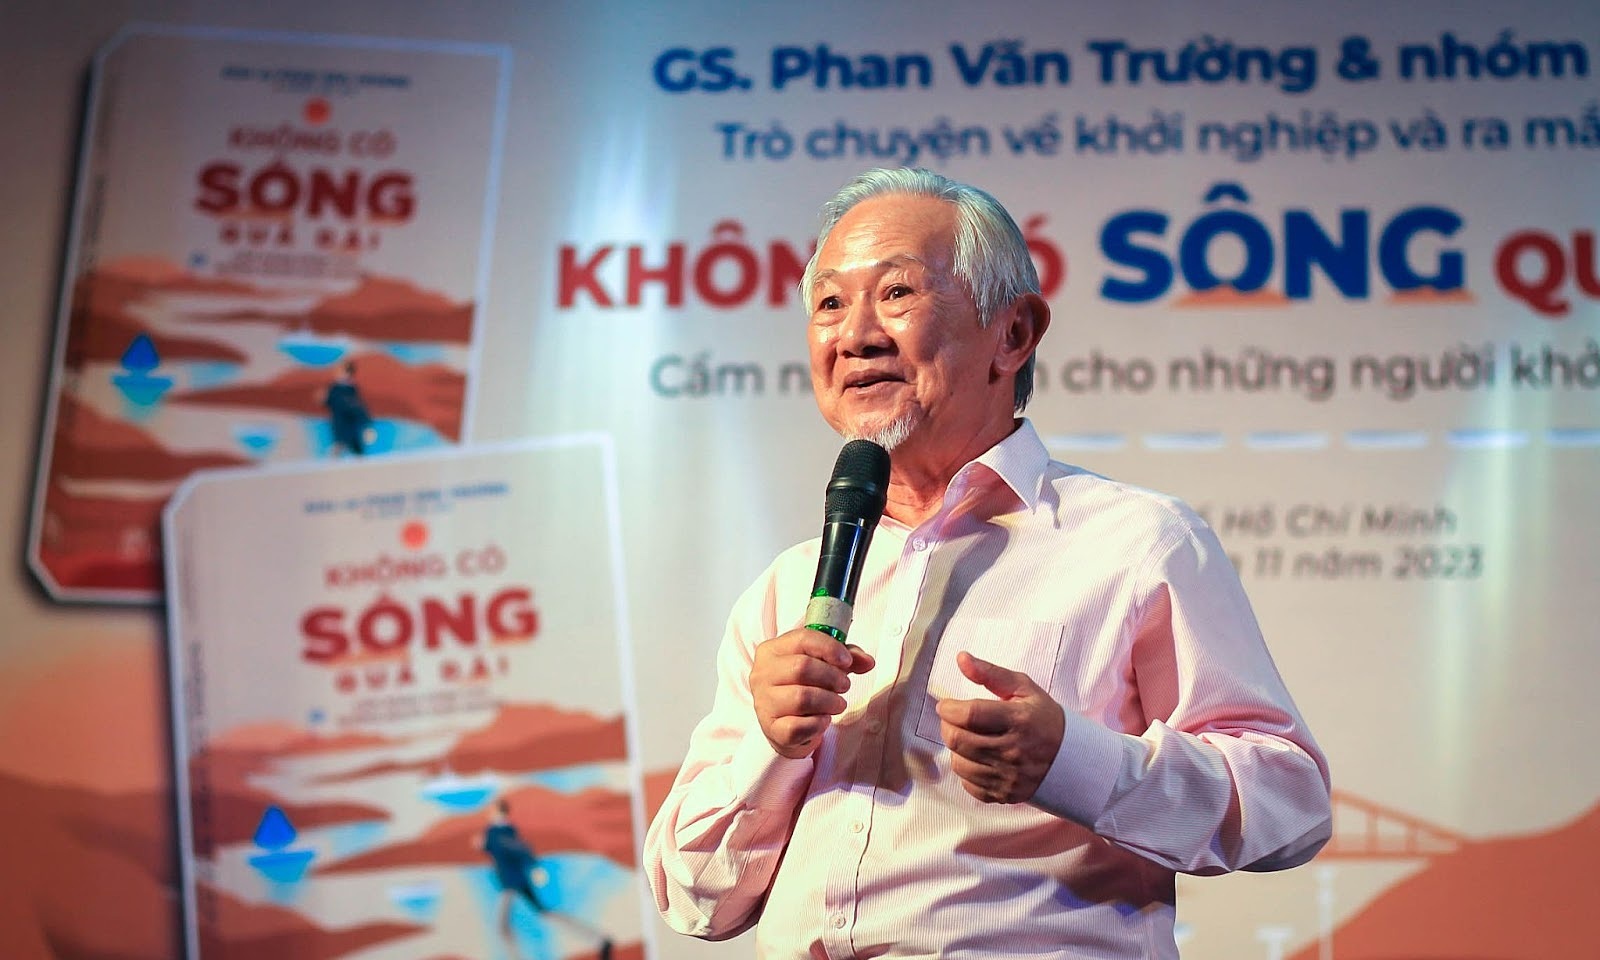 Giáo sư Phan Văn Trường ra sách 'Không có sông quá dài'